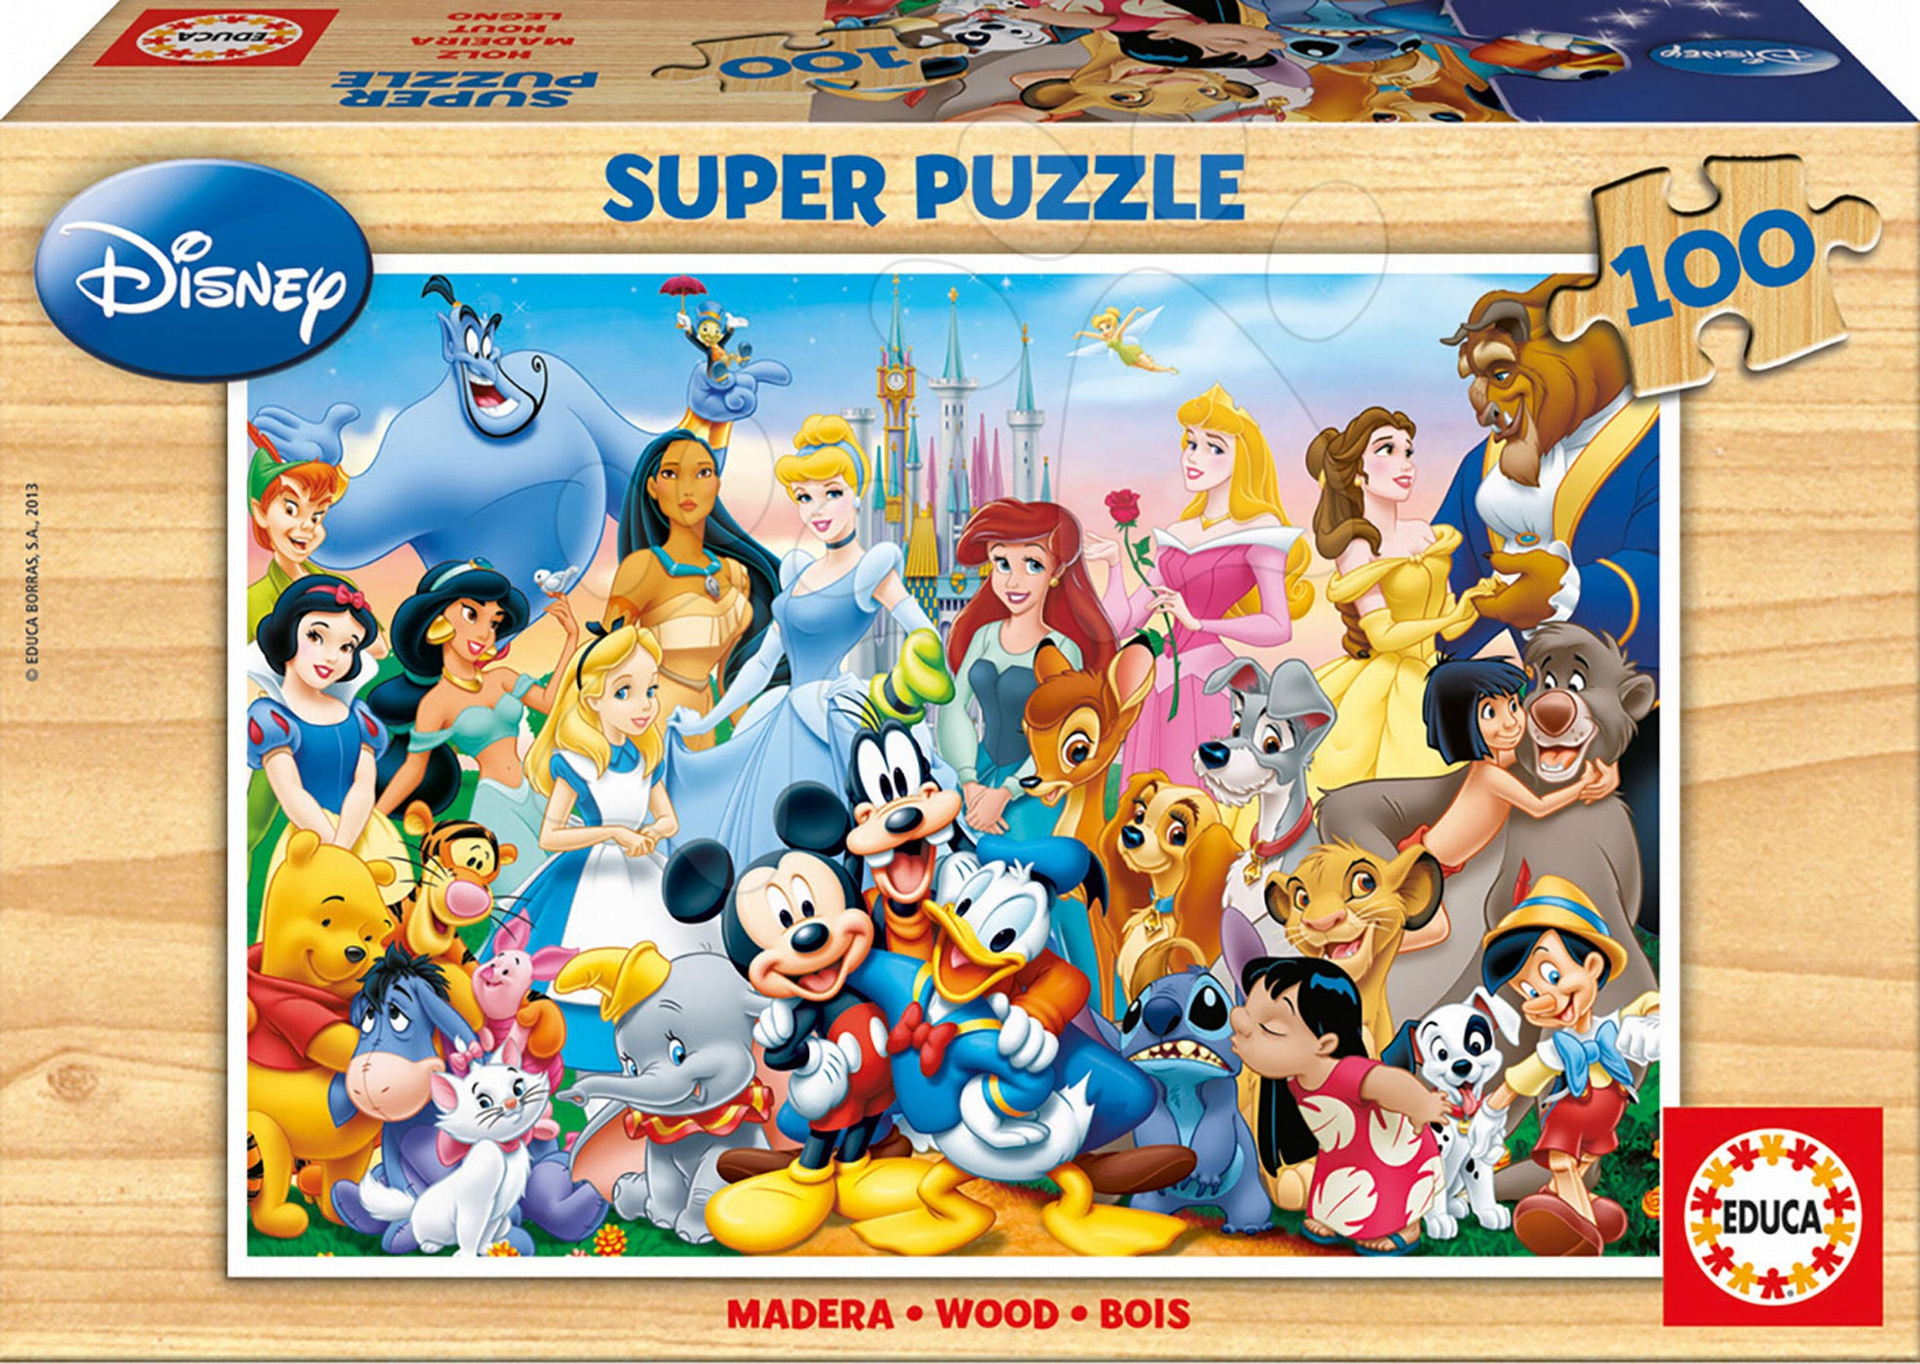 Puzzle di topolino per adulti giocattoli educativi 1000 pezzi